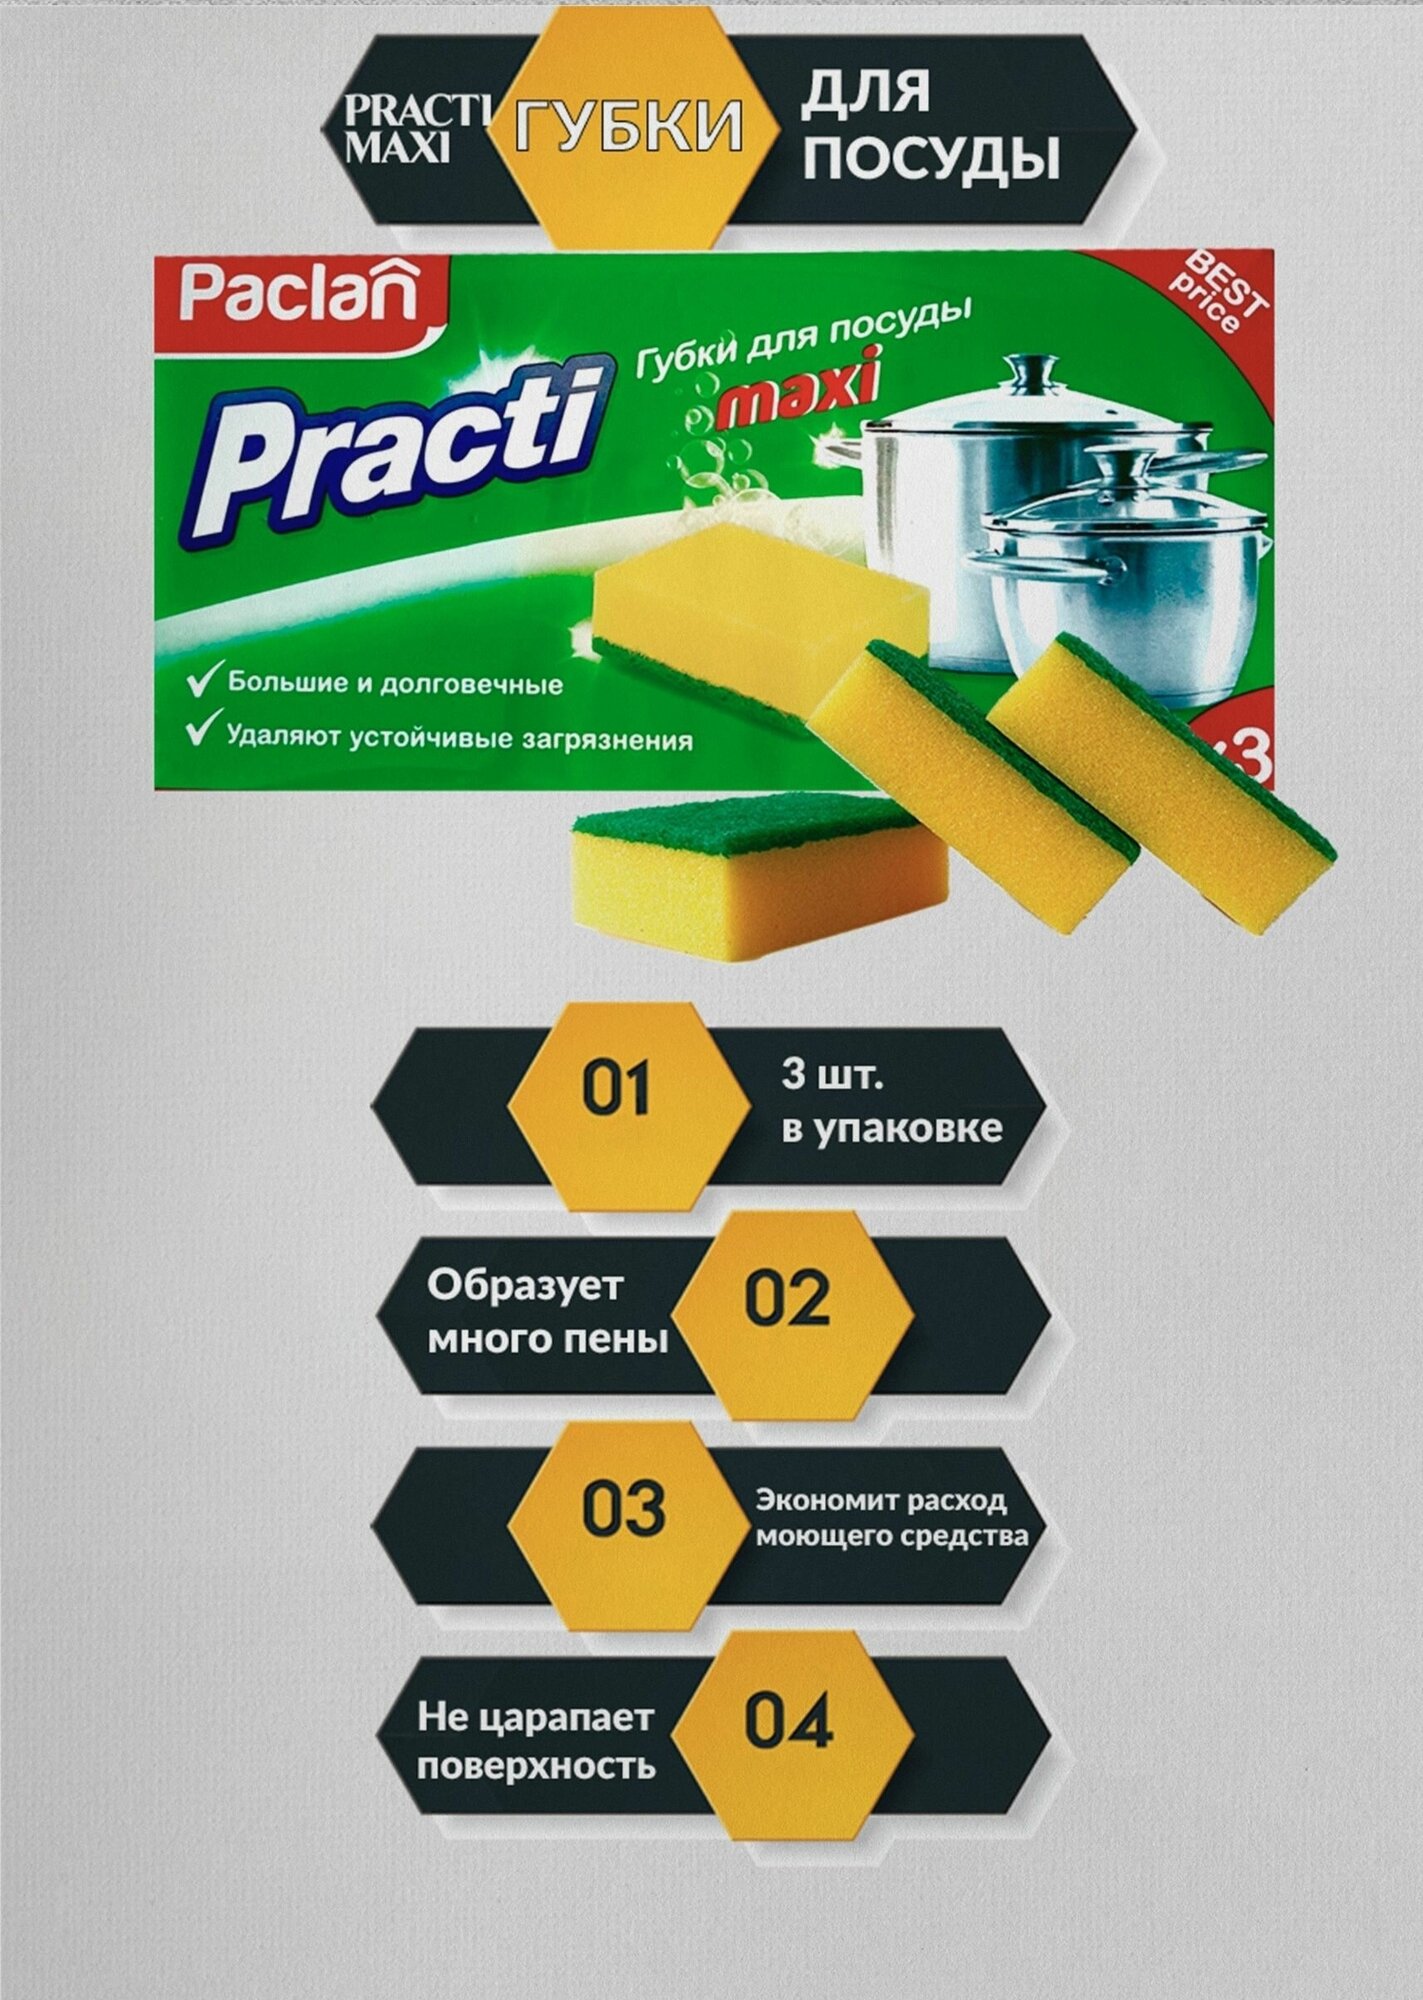 Губки для мытья посуды Paclan Practi Maxi поролоновые 95x65x35 мм 1 упаковка (3 штуки)